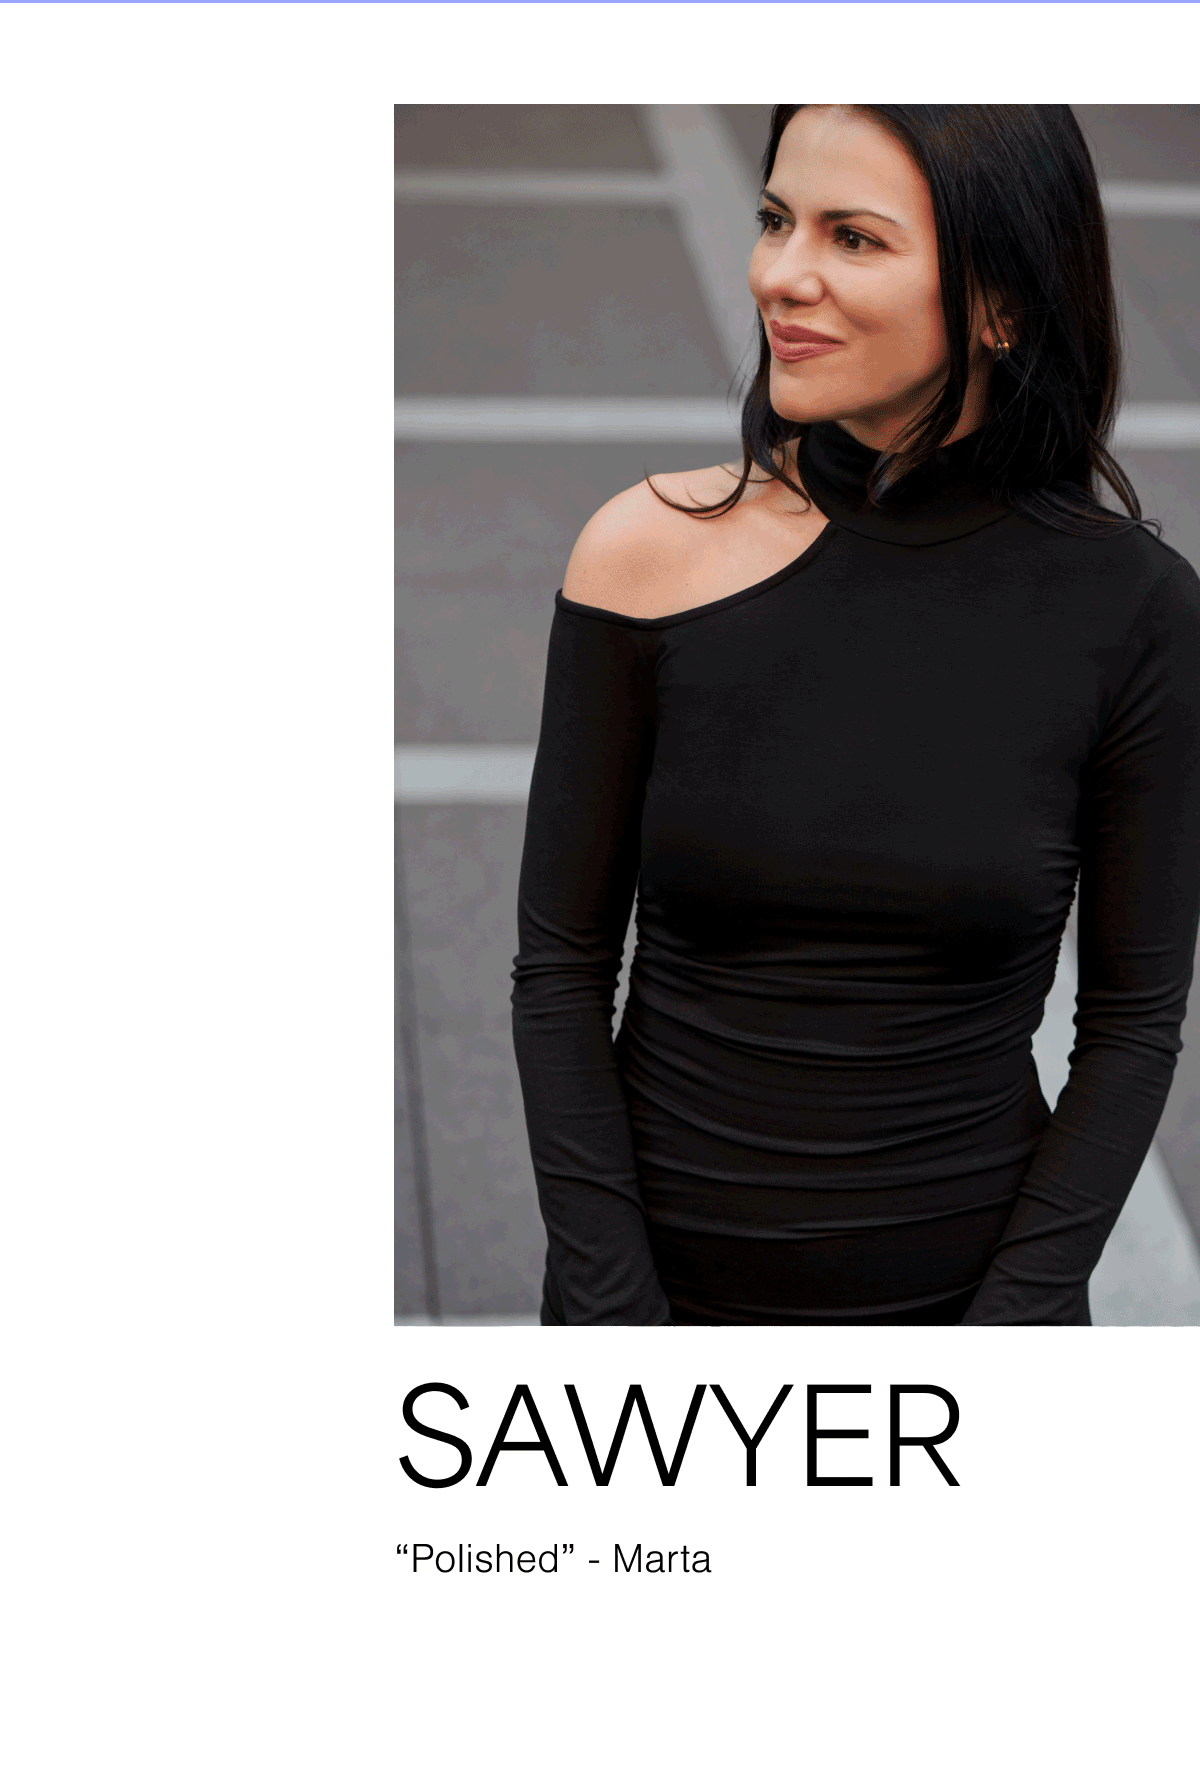 The Sawyer Dress